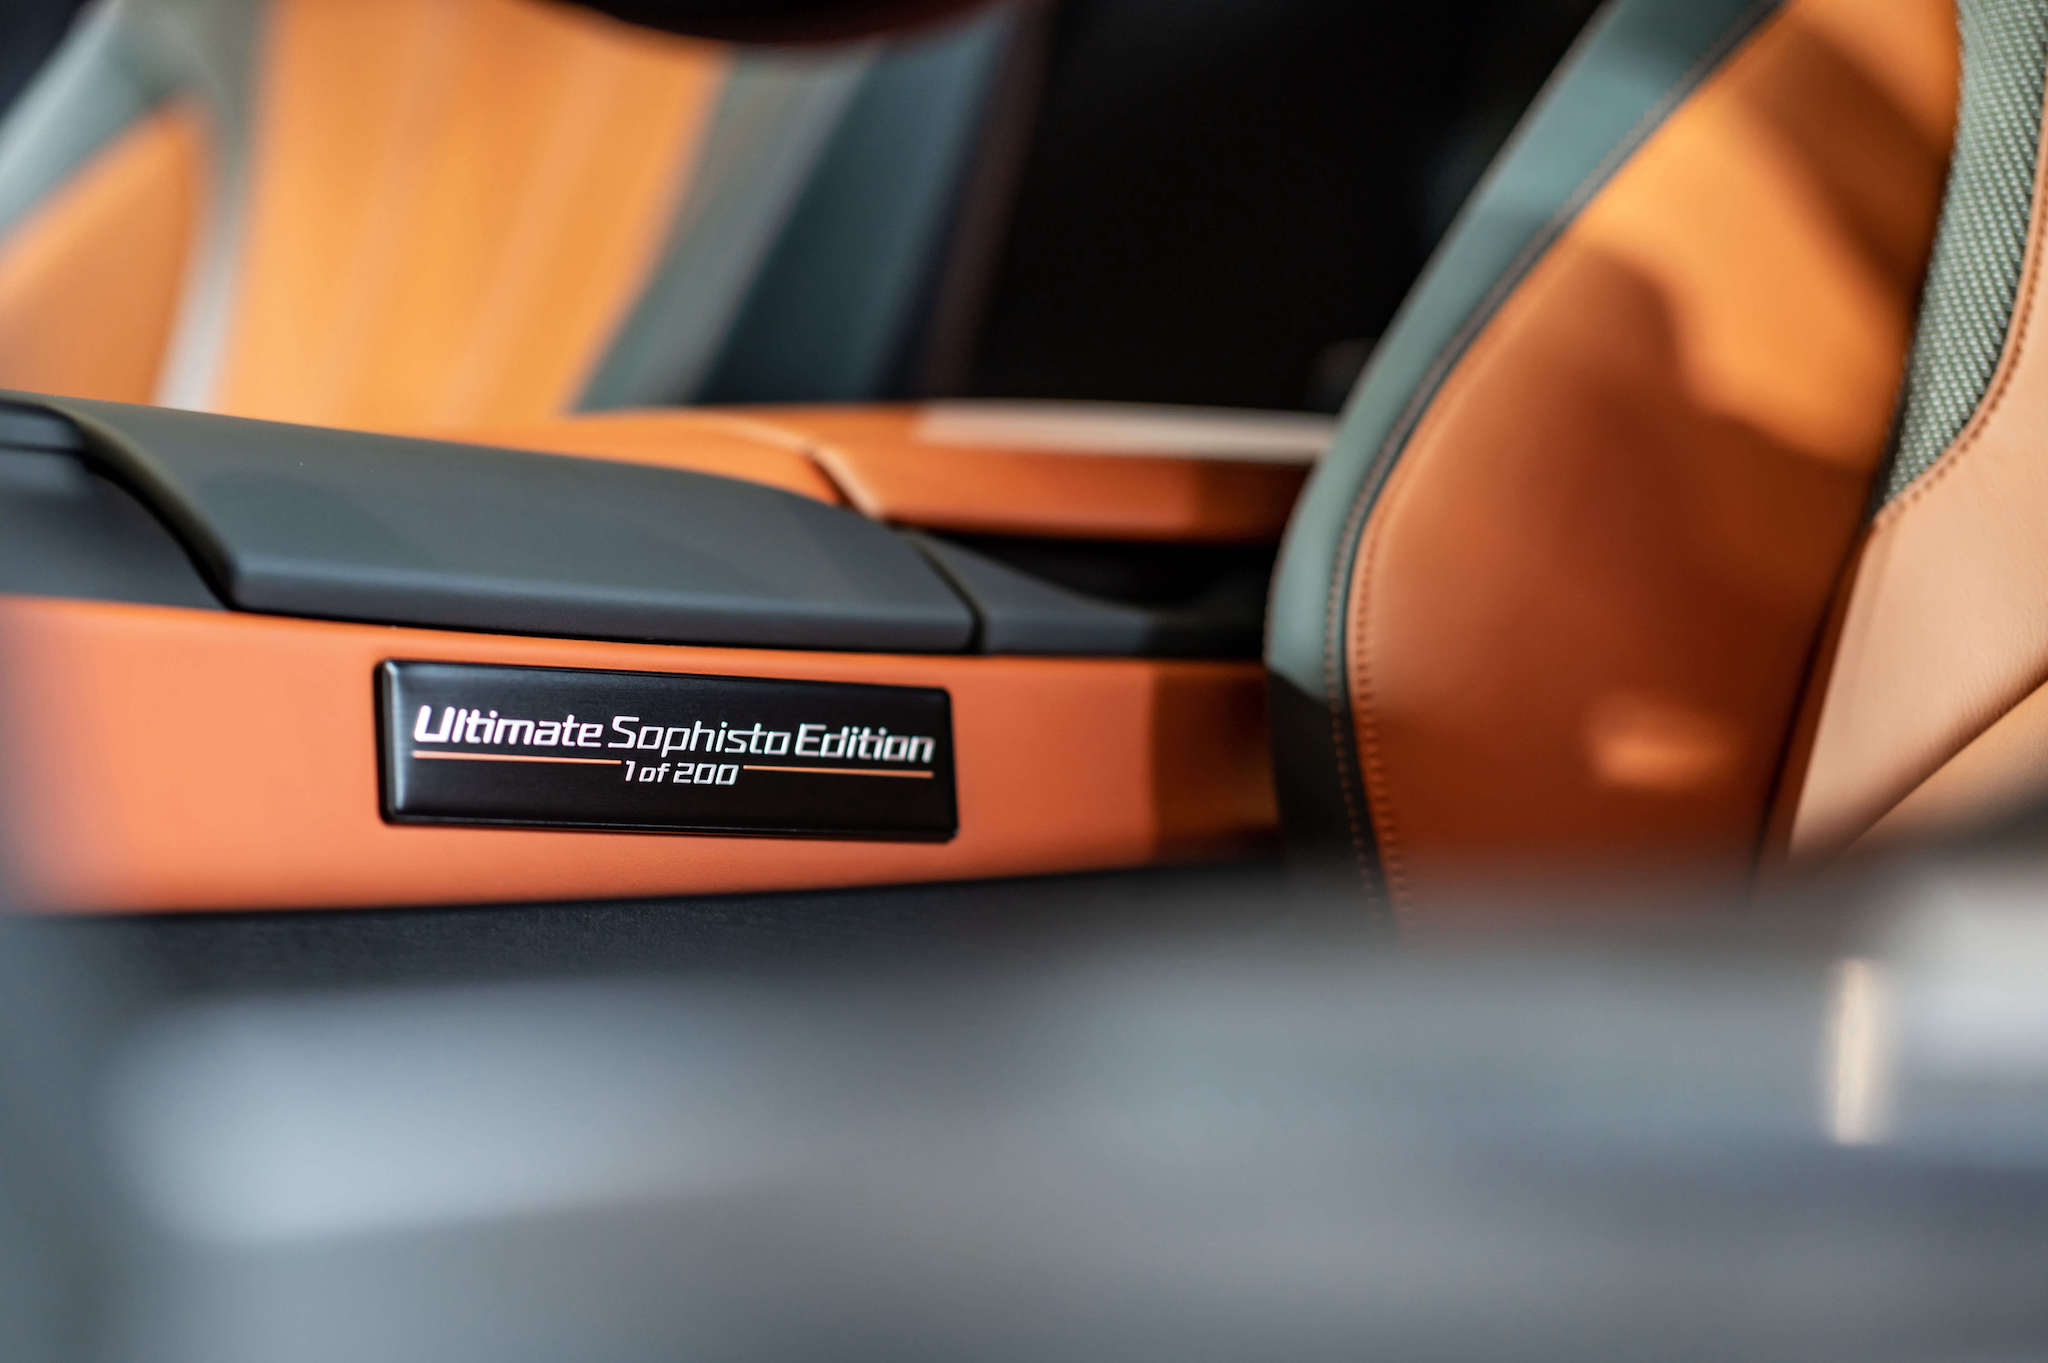 全新 BMW i8 Ultimate Sophisto Edition 特仕版專屬銅色天然真皮內裝與「1 of 200 Ultimate Sophisto Edition」字樣的車型銘牌。